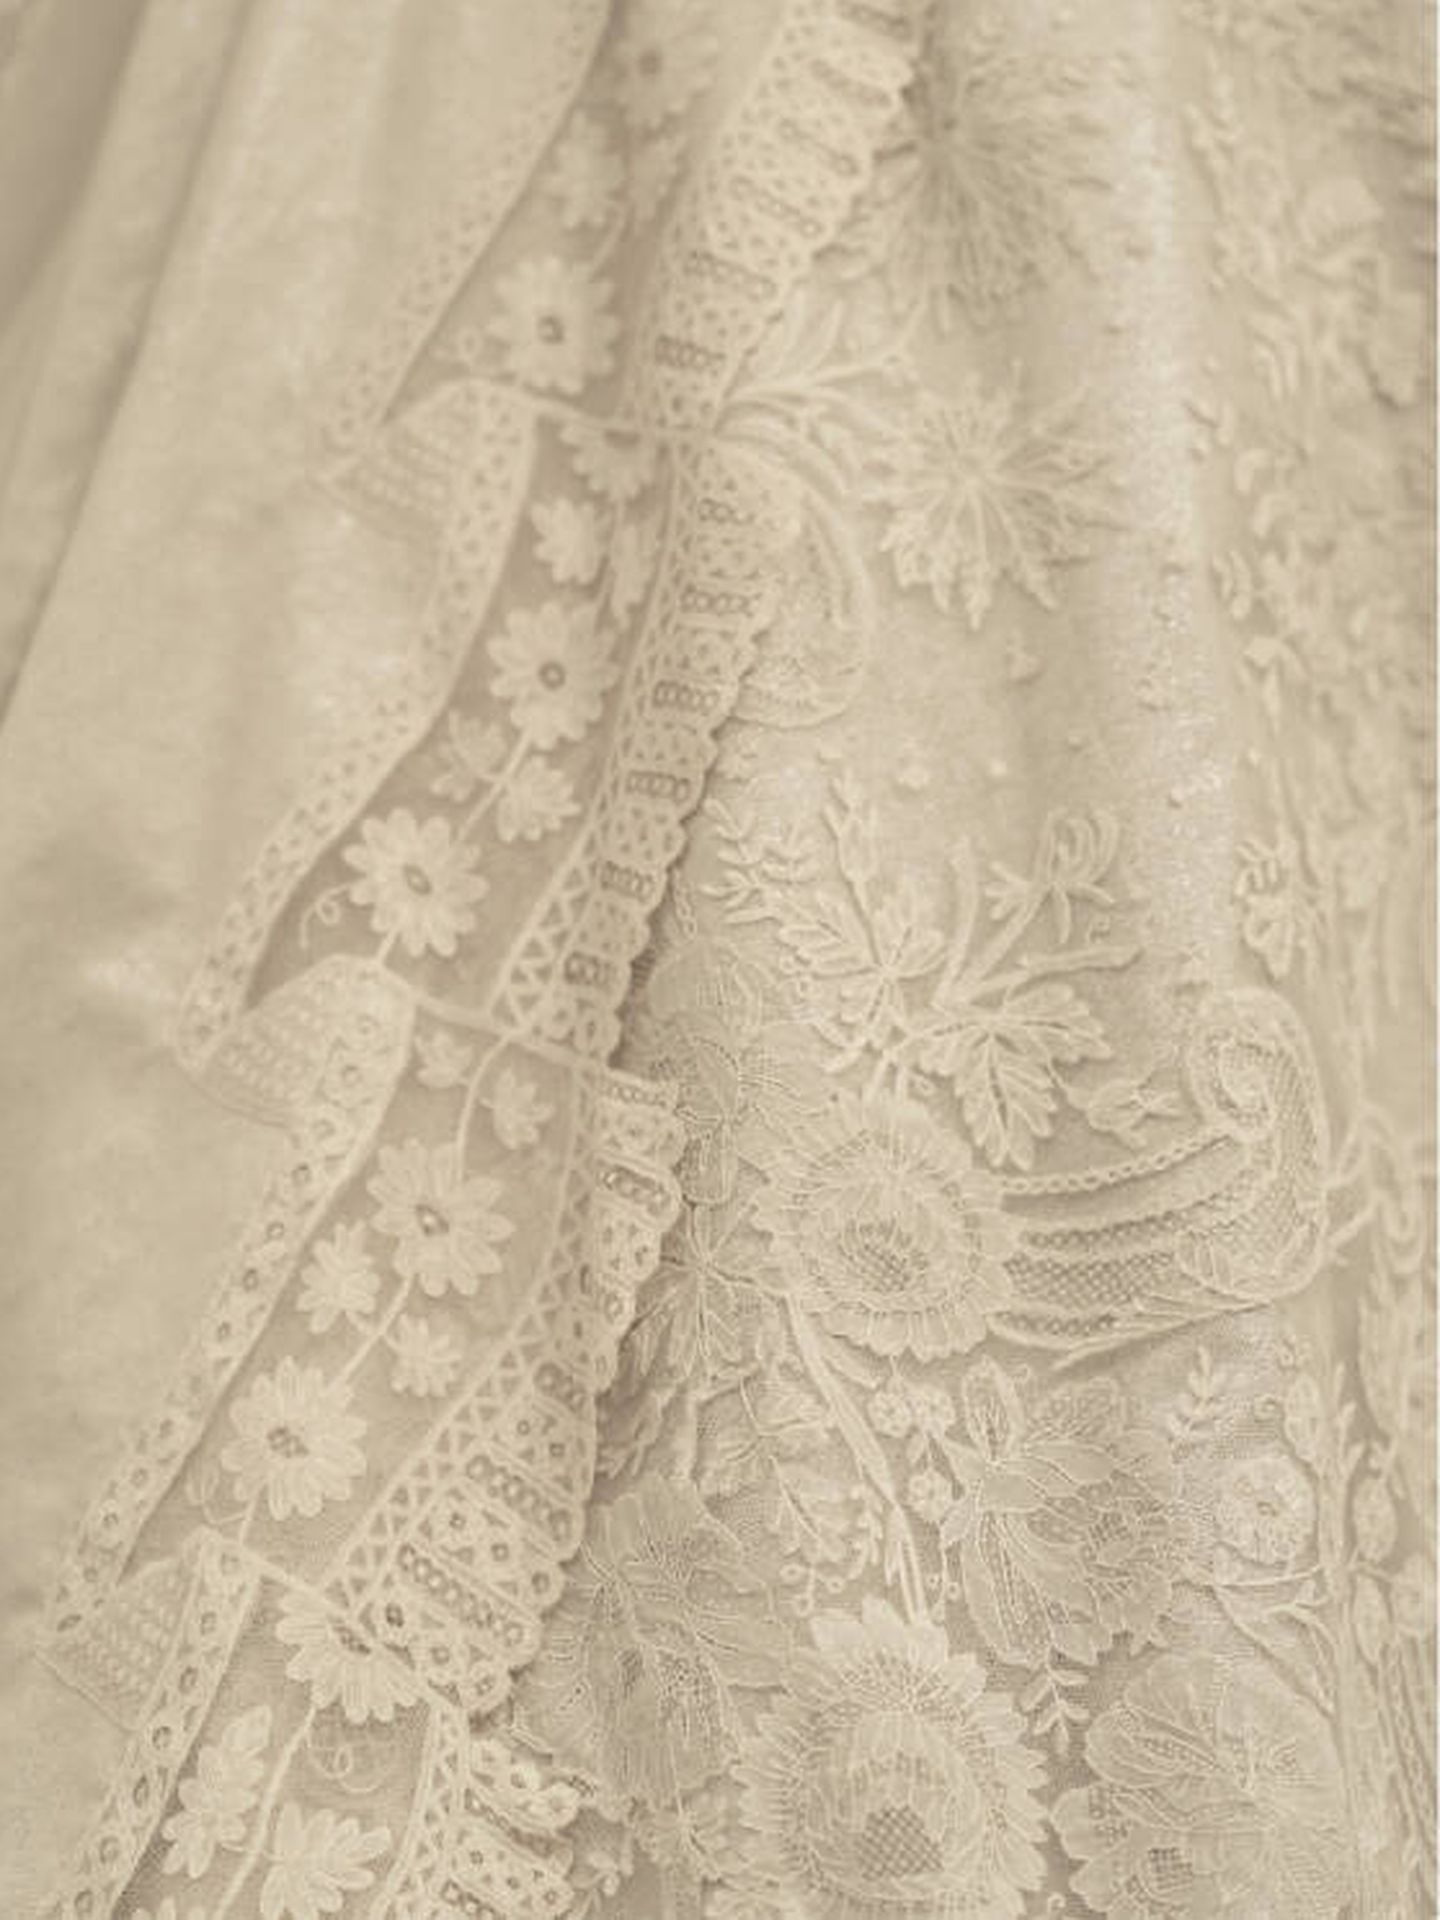 Detalle del encaje de Bruselas del vestido de la reina Sofía. (Helena Sánchez)